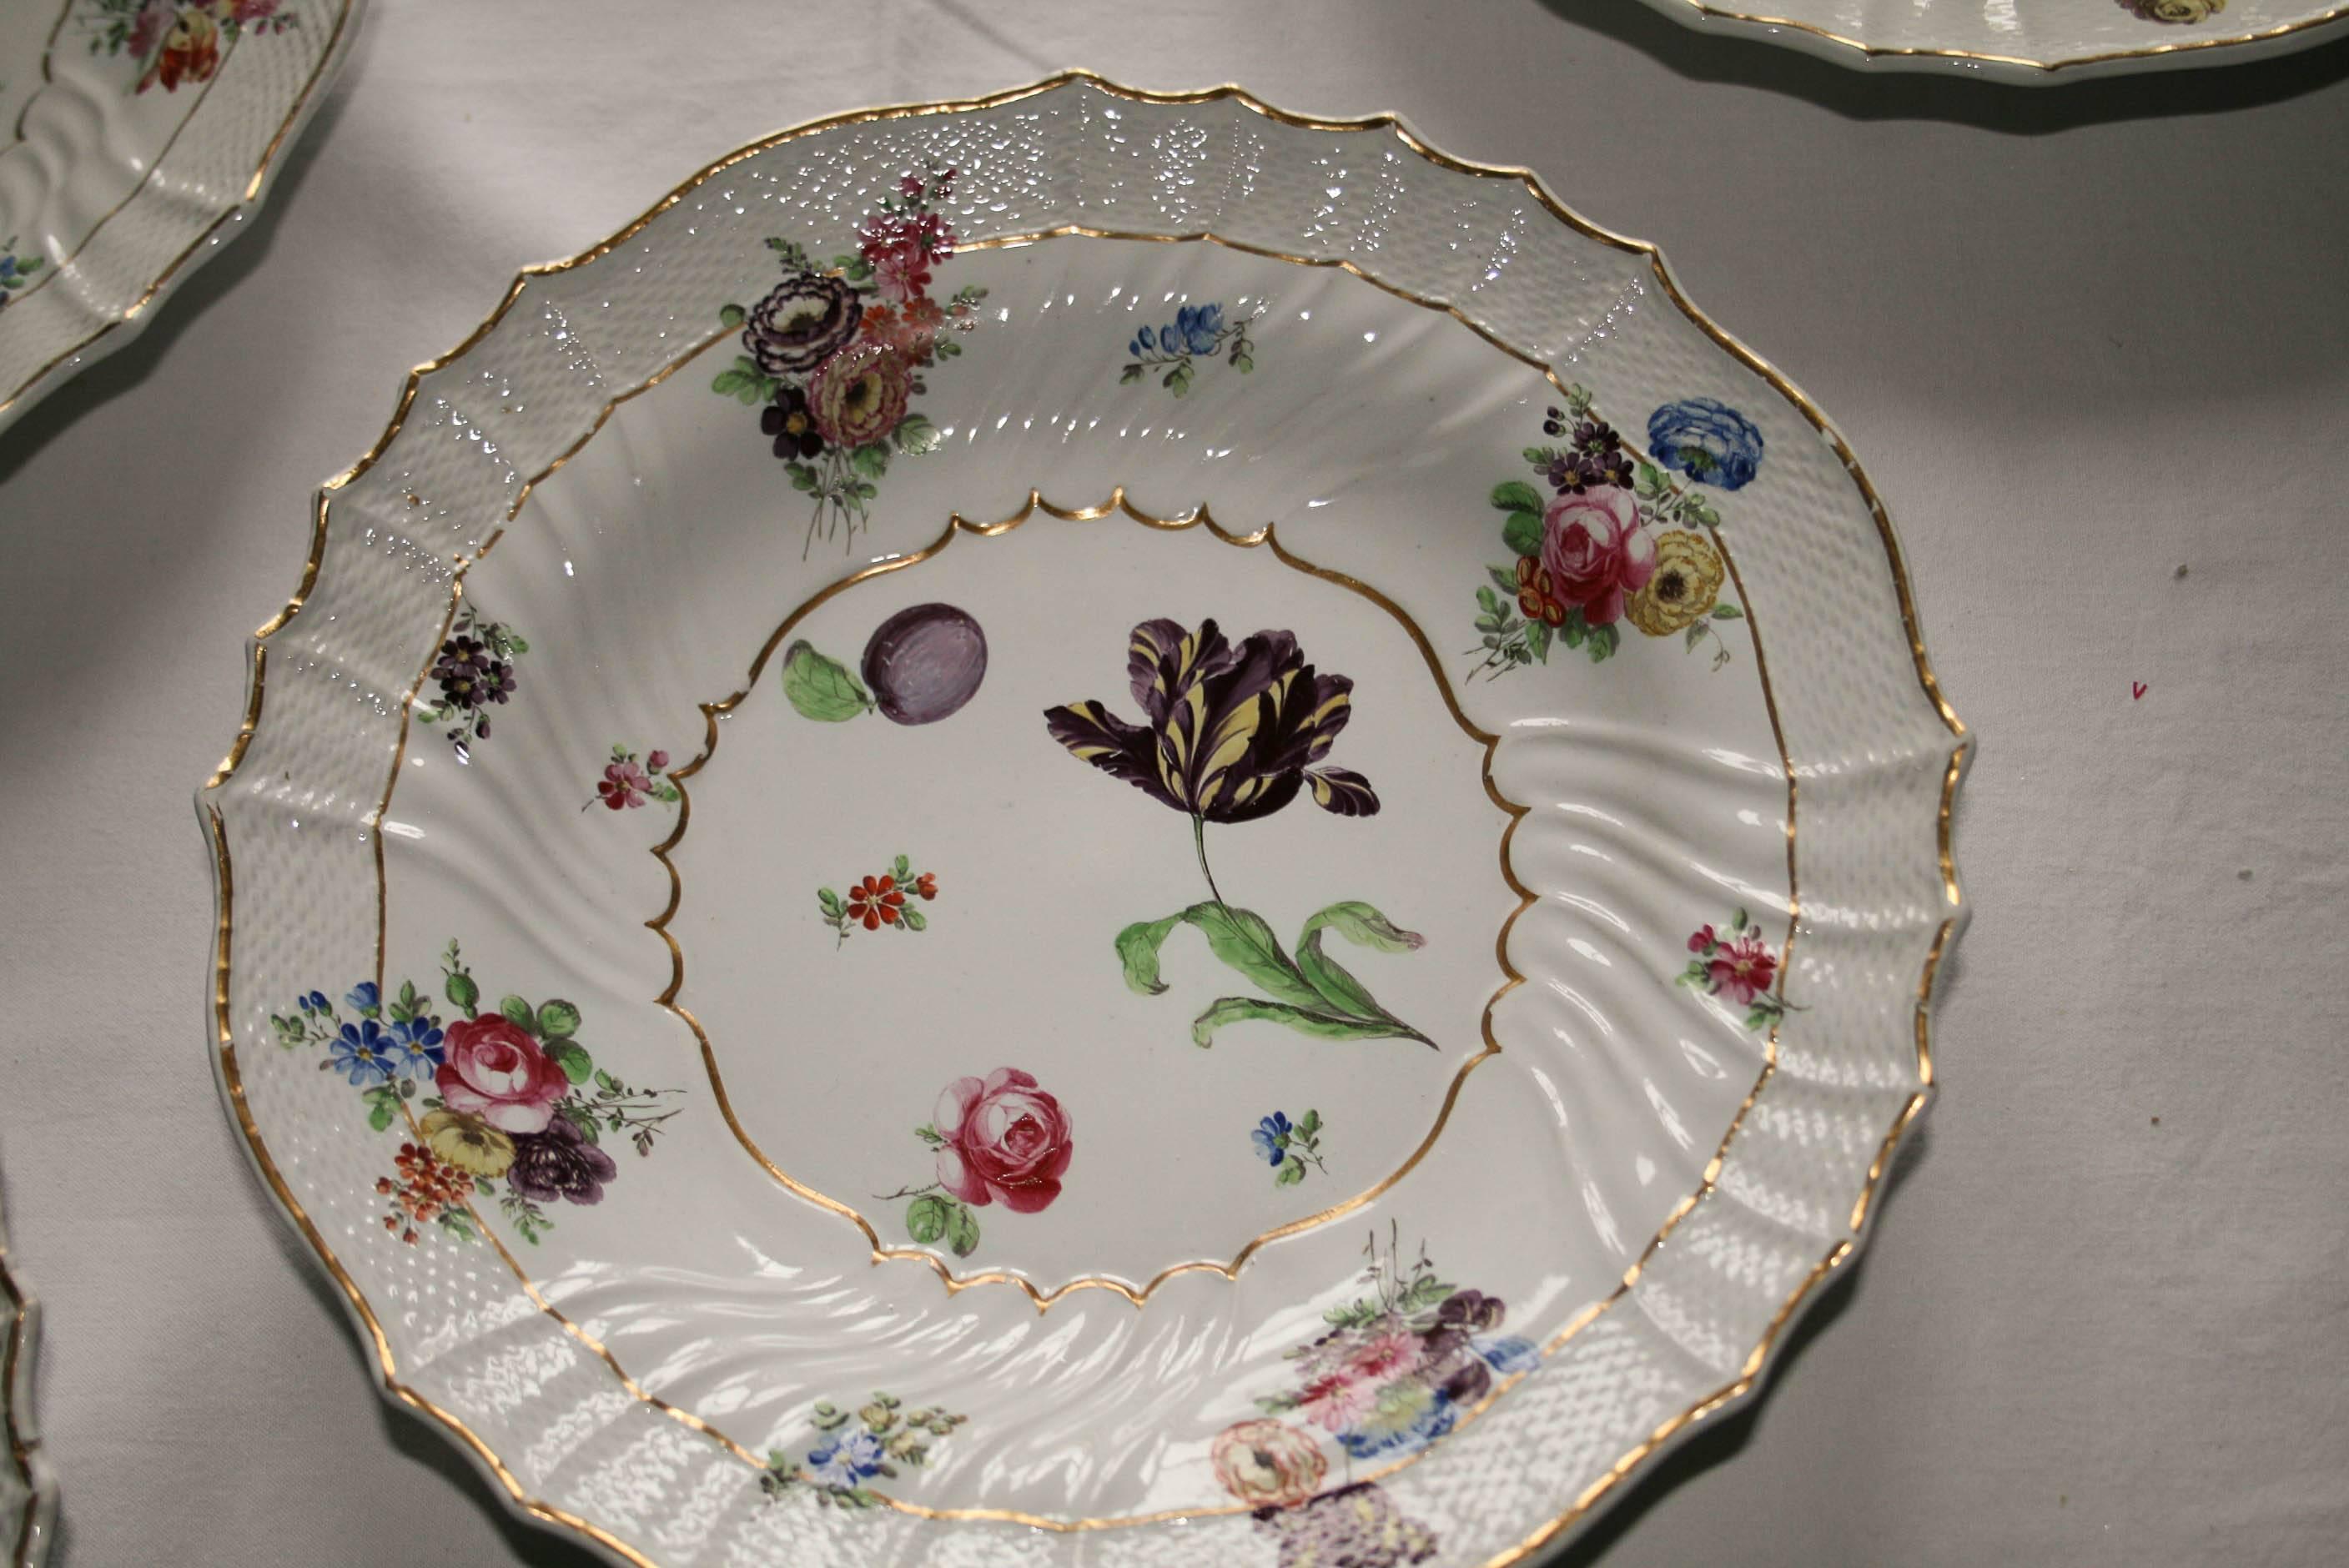 Das Set aus acht handbemalten Porzellanschalen mit Blumendesign wurde von Richard Ginori im historischen Hauptquartier von Doccia (Toskana, Italien) hergestellt, einem der wichtigsten und berühmtesten Hersteller im Europa des 18. Jahrhunderts und